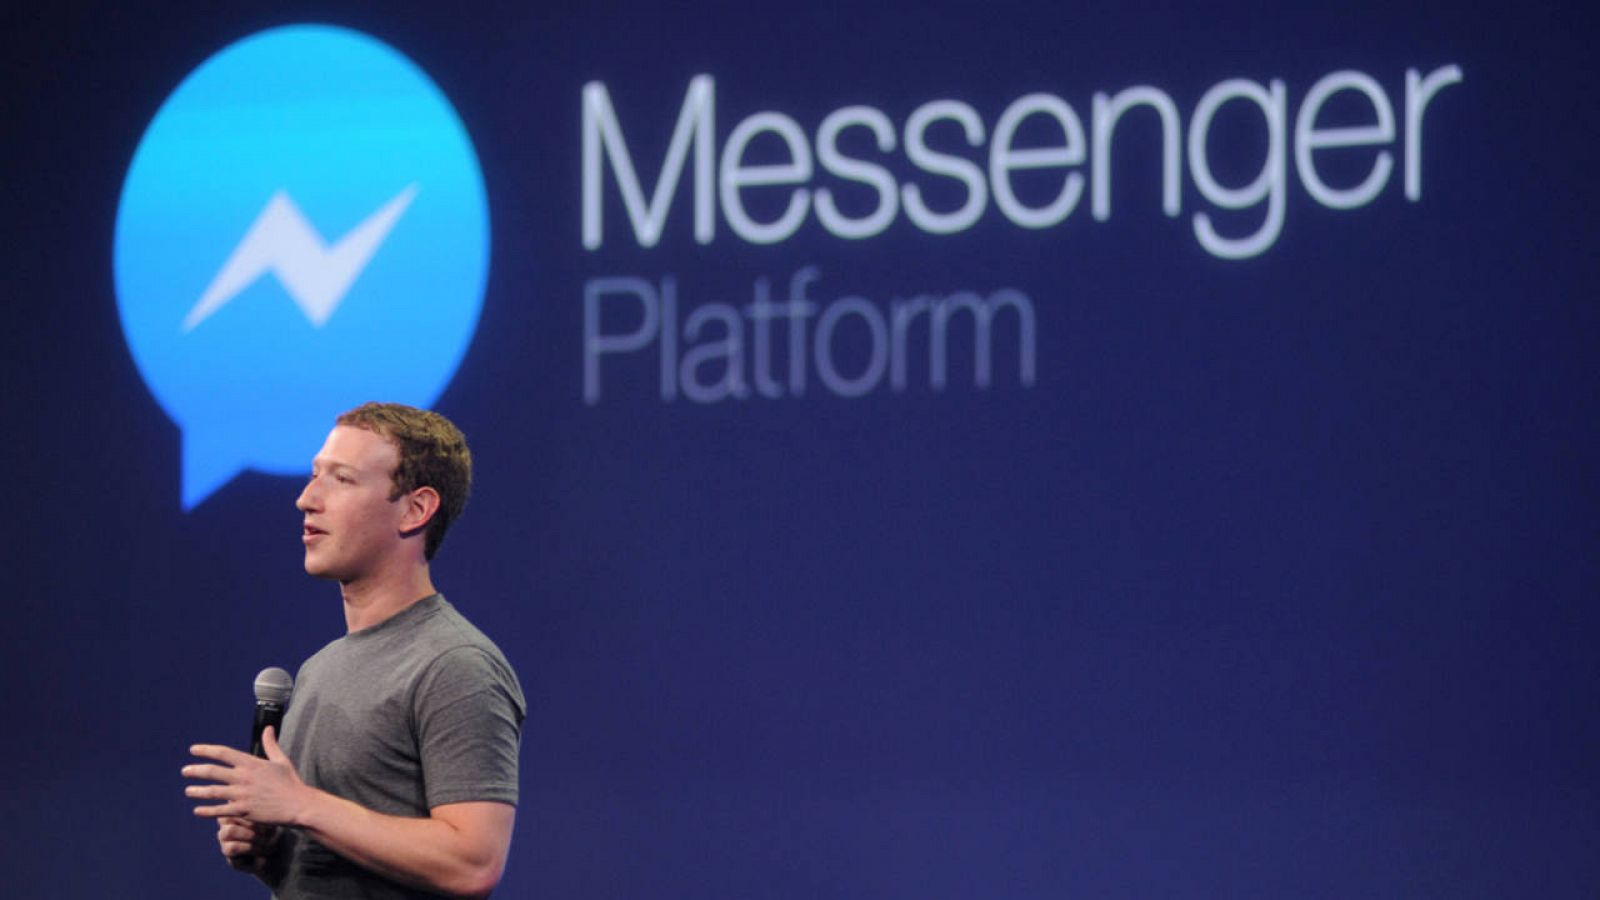 Las aplicaciones de mensajería instantánea Facebook Messenger y Whatsapp pertenecen a Facebook.